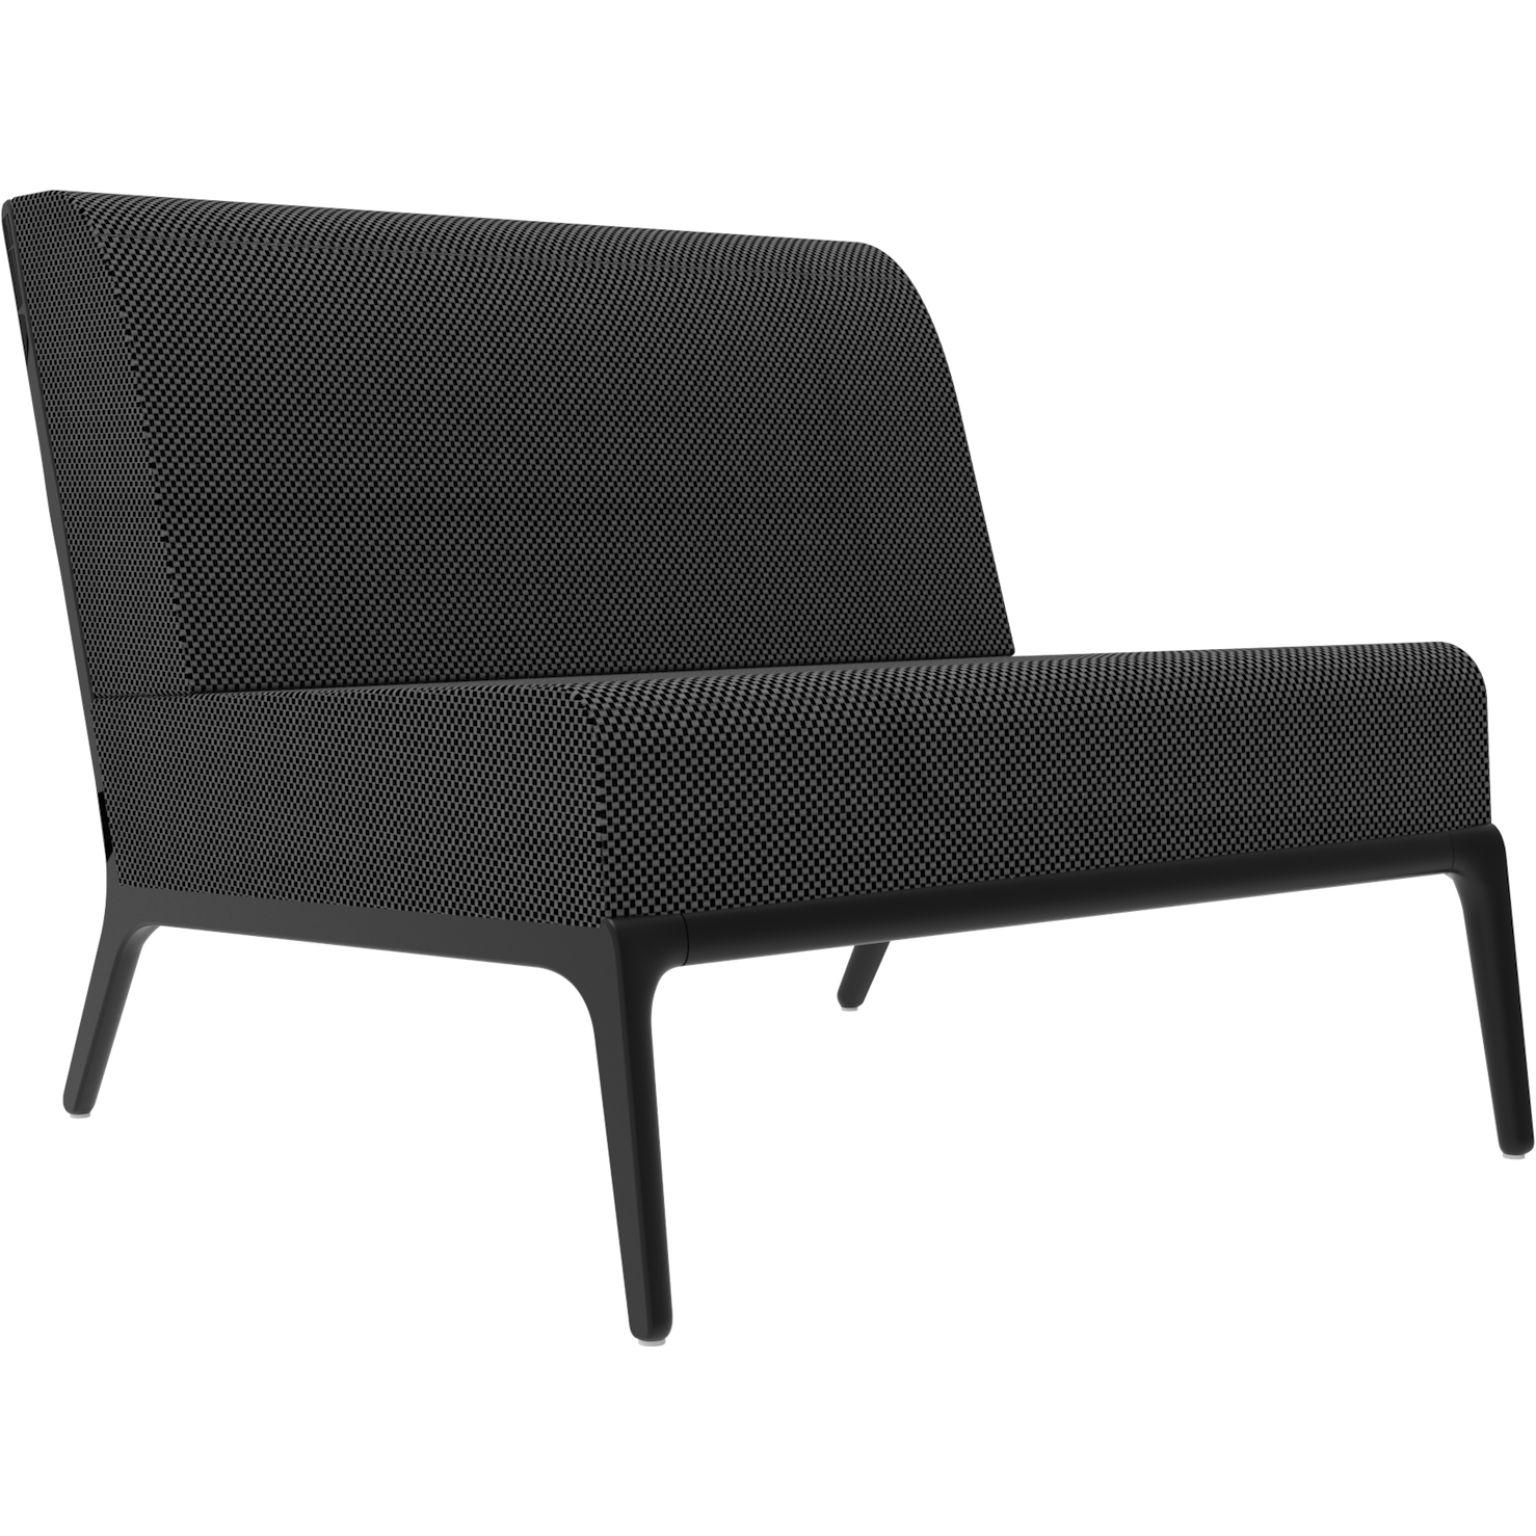 Xaloc Central 90 Schwarz Modulares Sofa von MOWEE
Abmessungen: T100 x B90 x H81 cm (Sitzhöhe 42 cm)
MATERIAL: Aluminium, Textil
Gewicht: 24 kg
Auch in verschiedenen Farben und Ausführungen erhältlich. 

 Xaloc synthetisiert die Linien der